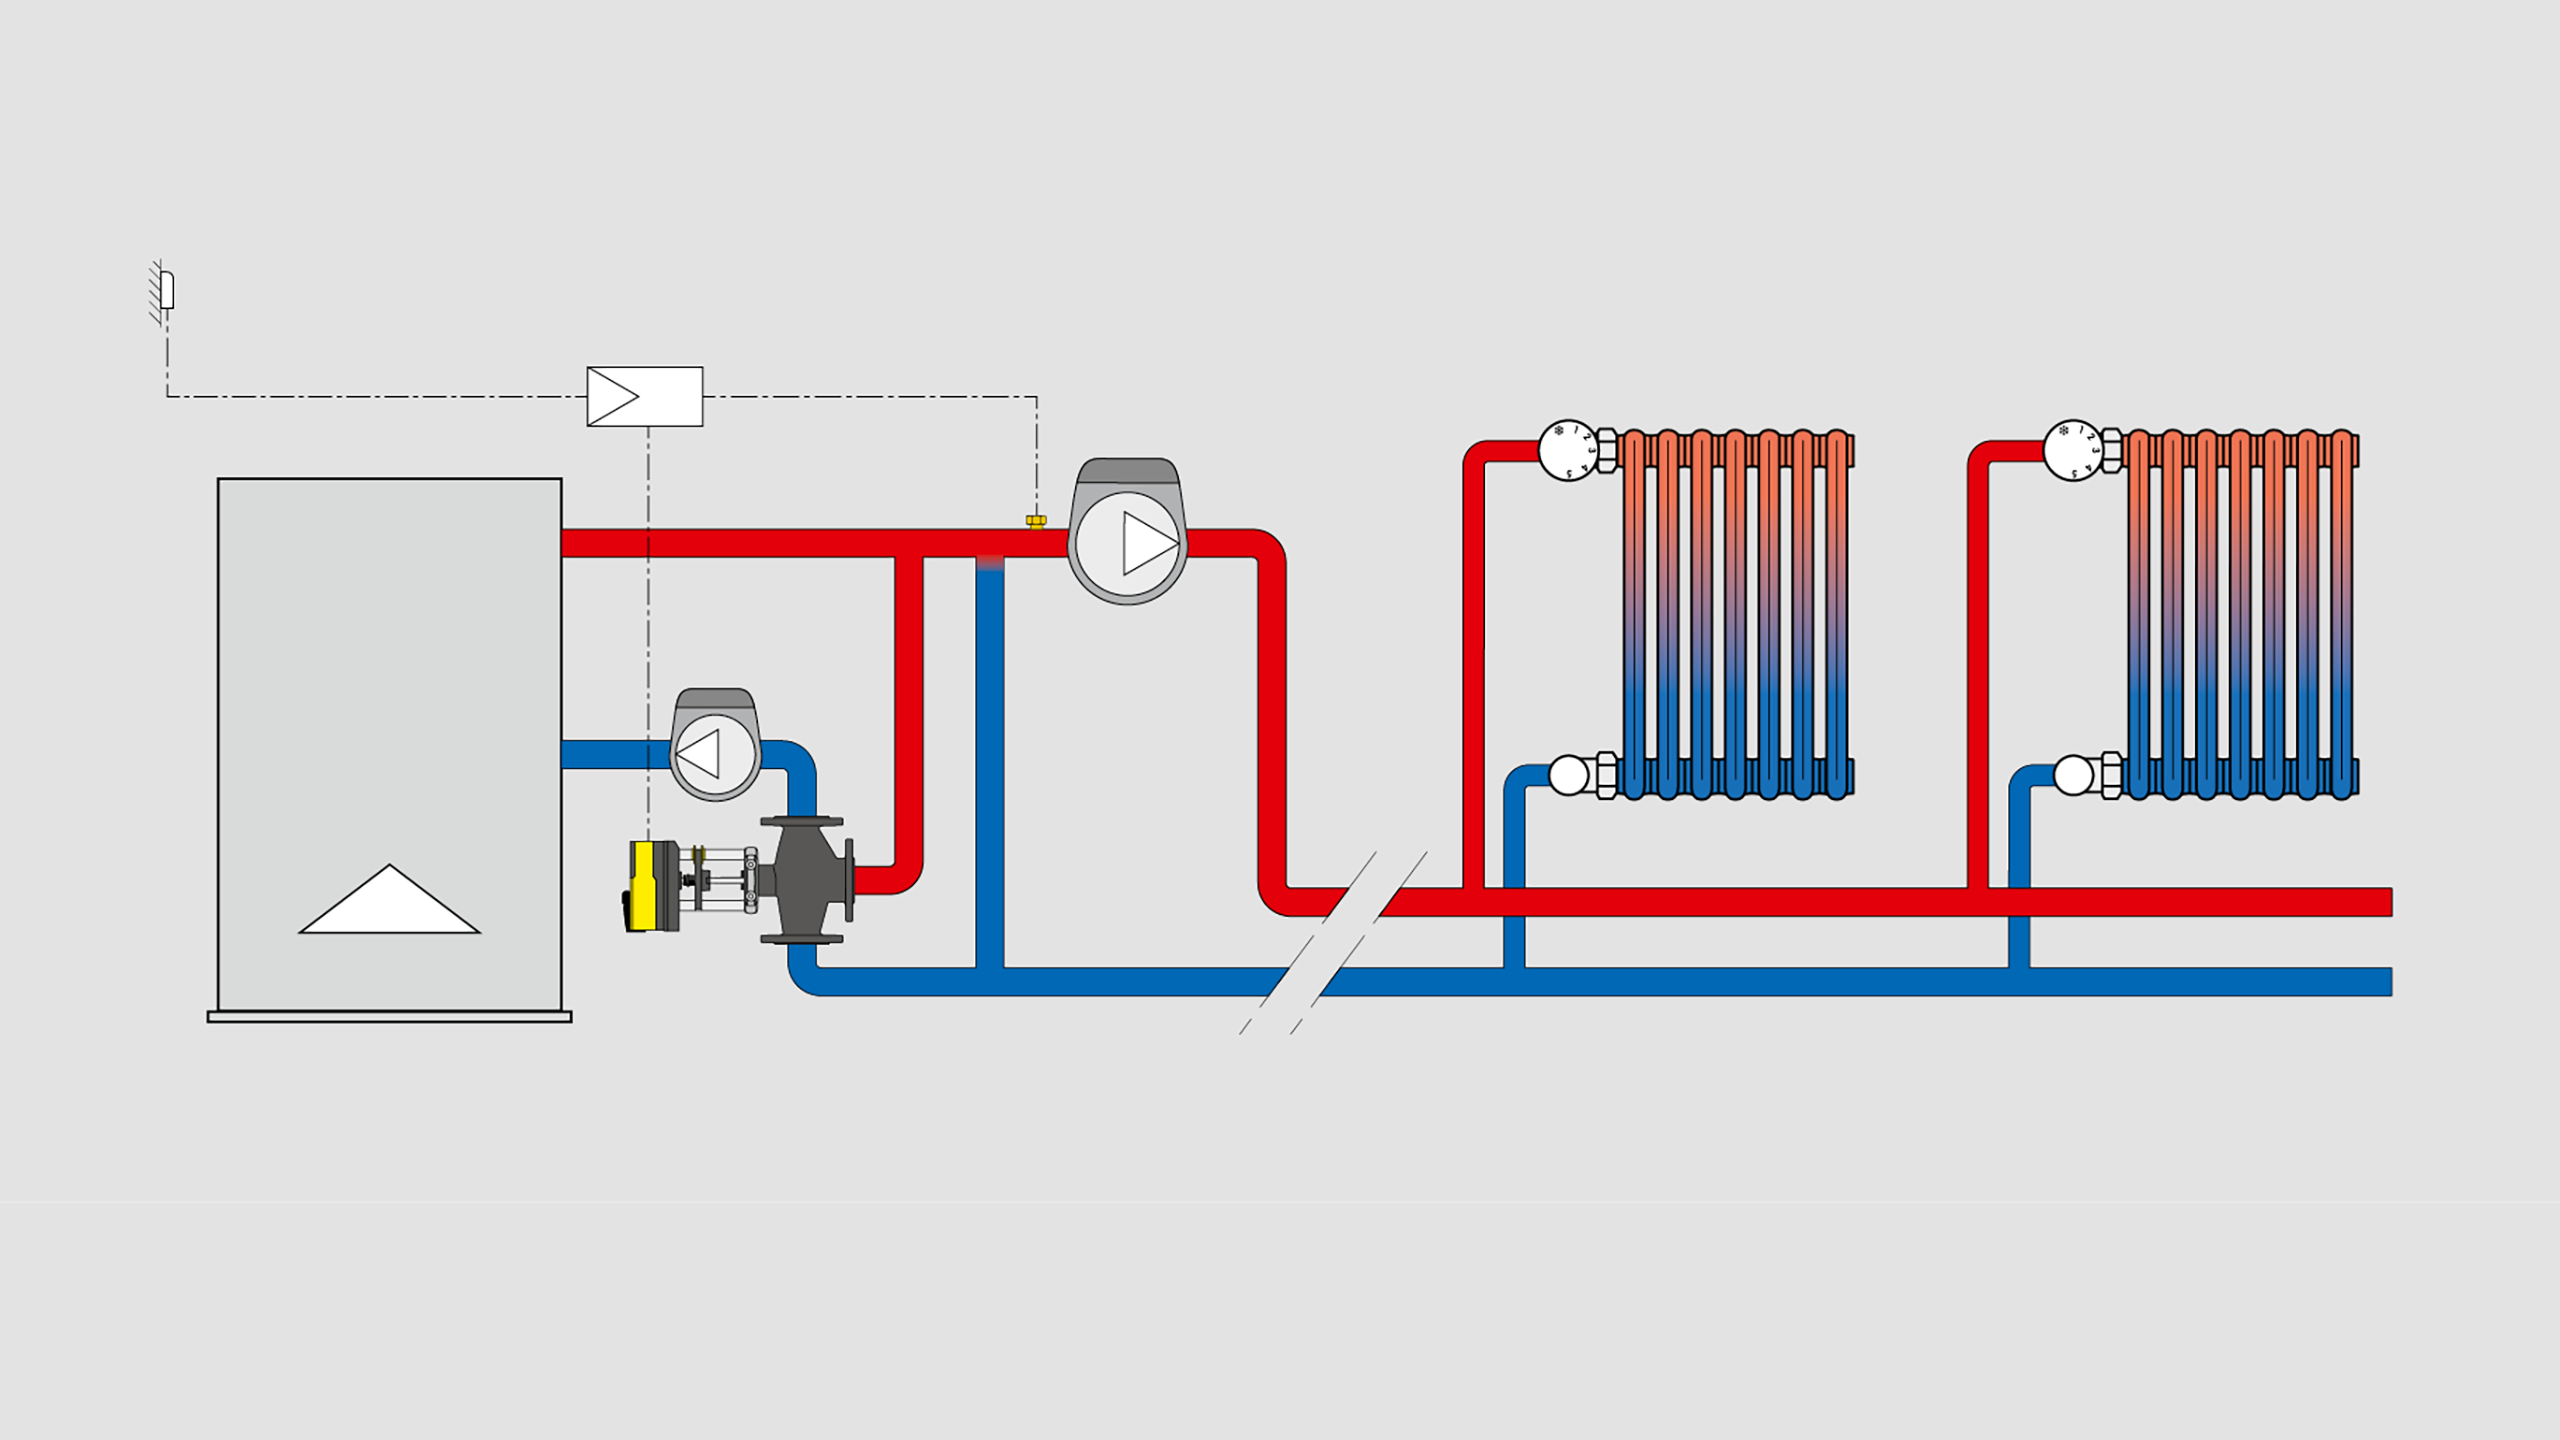 Schema applicativo - Regolazione climatica con valvola a 3 vie in centrale termica per impianti a radiatori